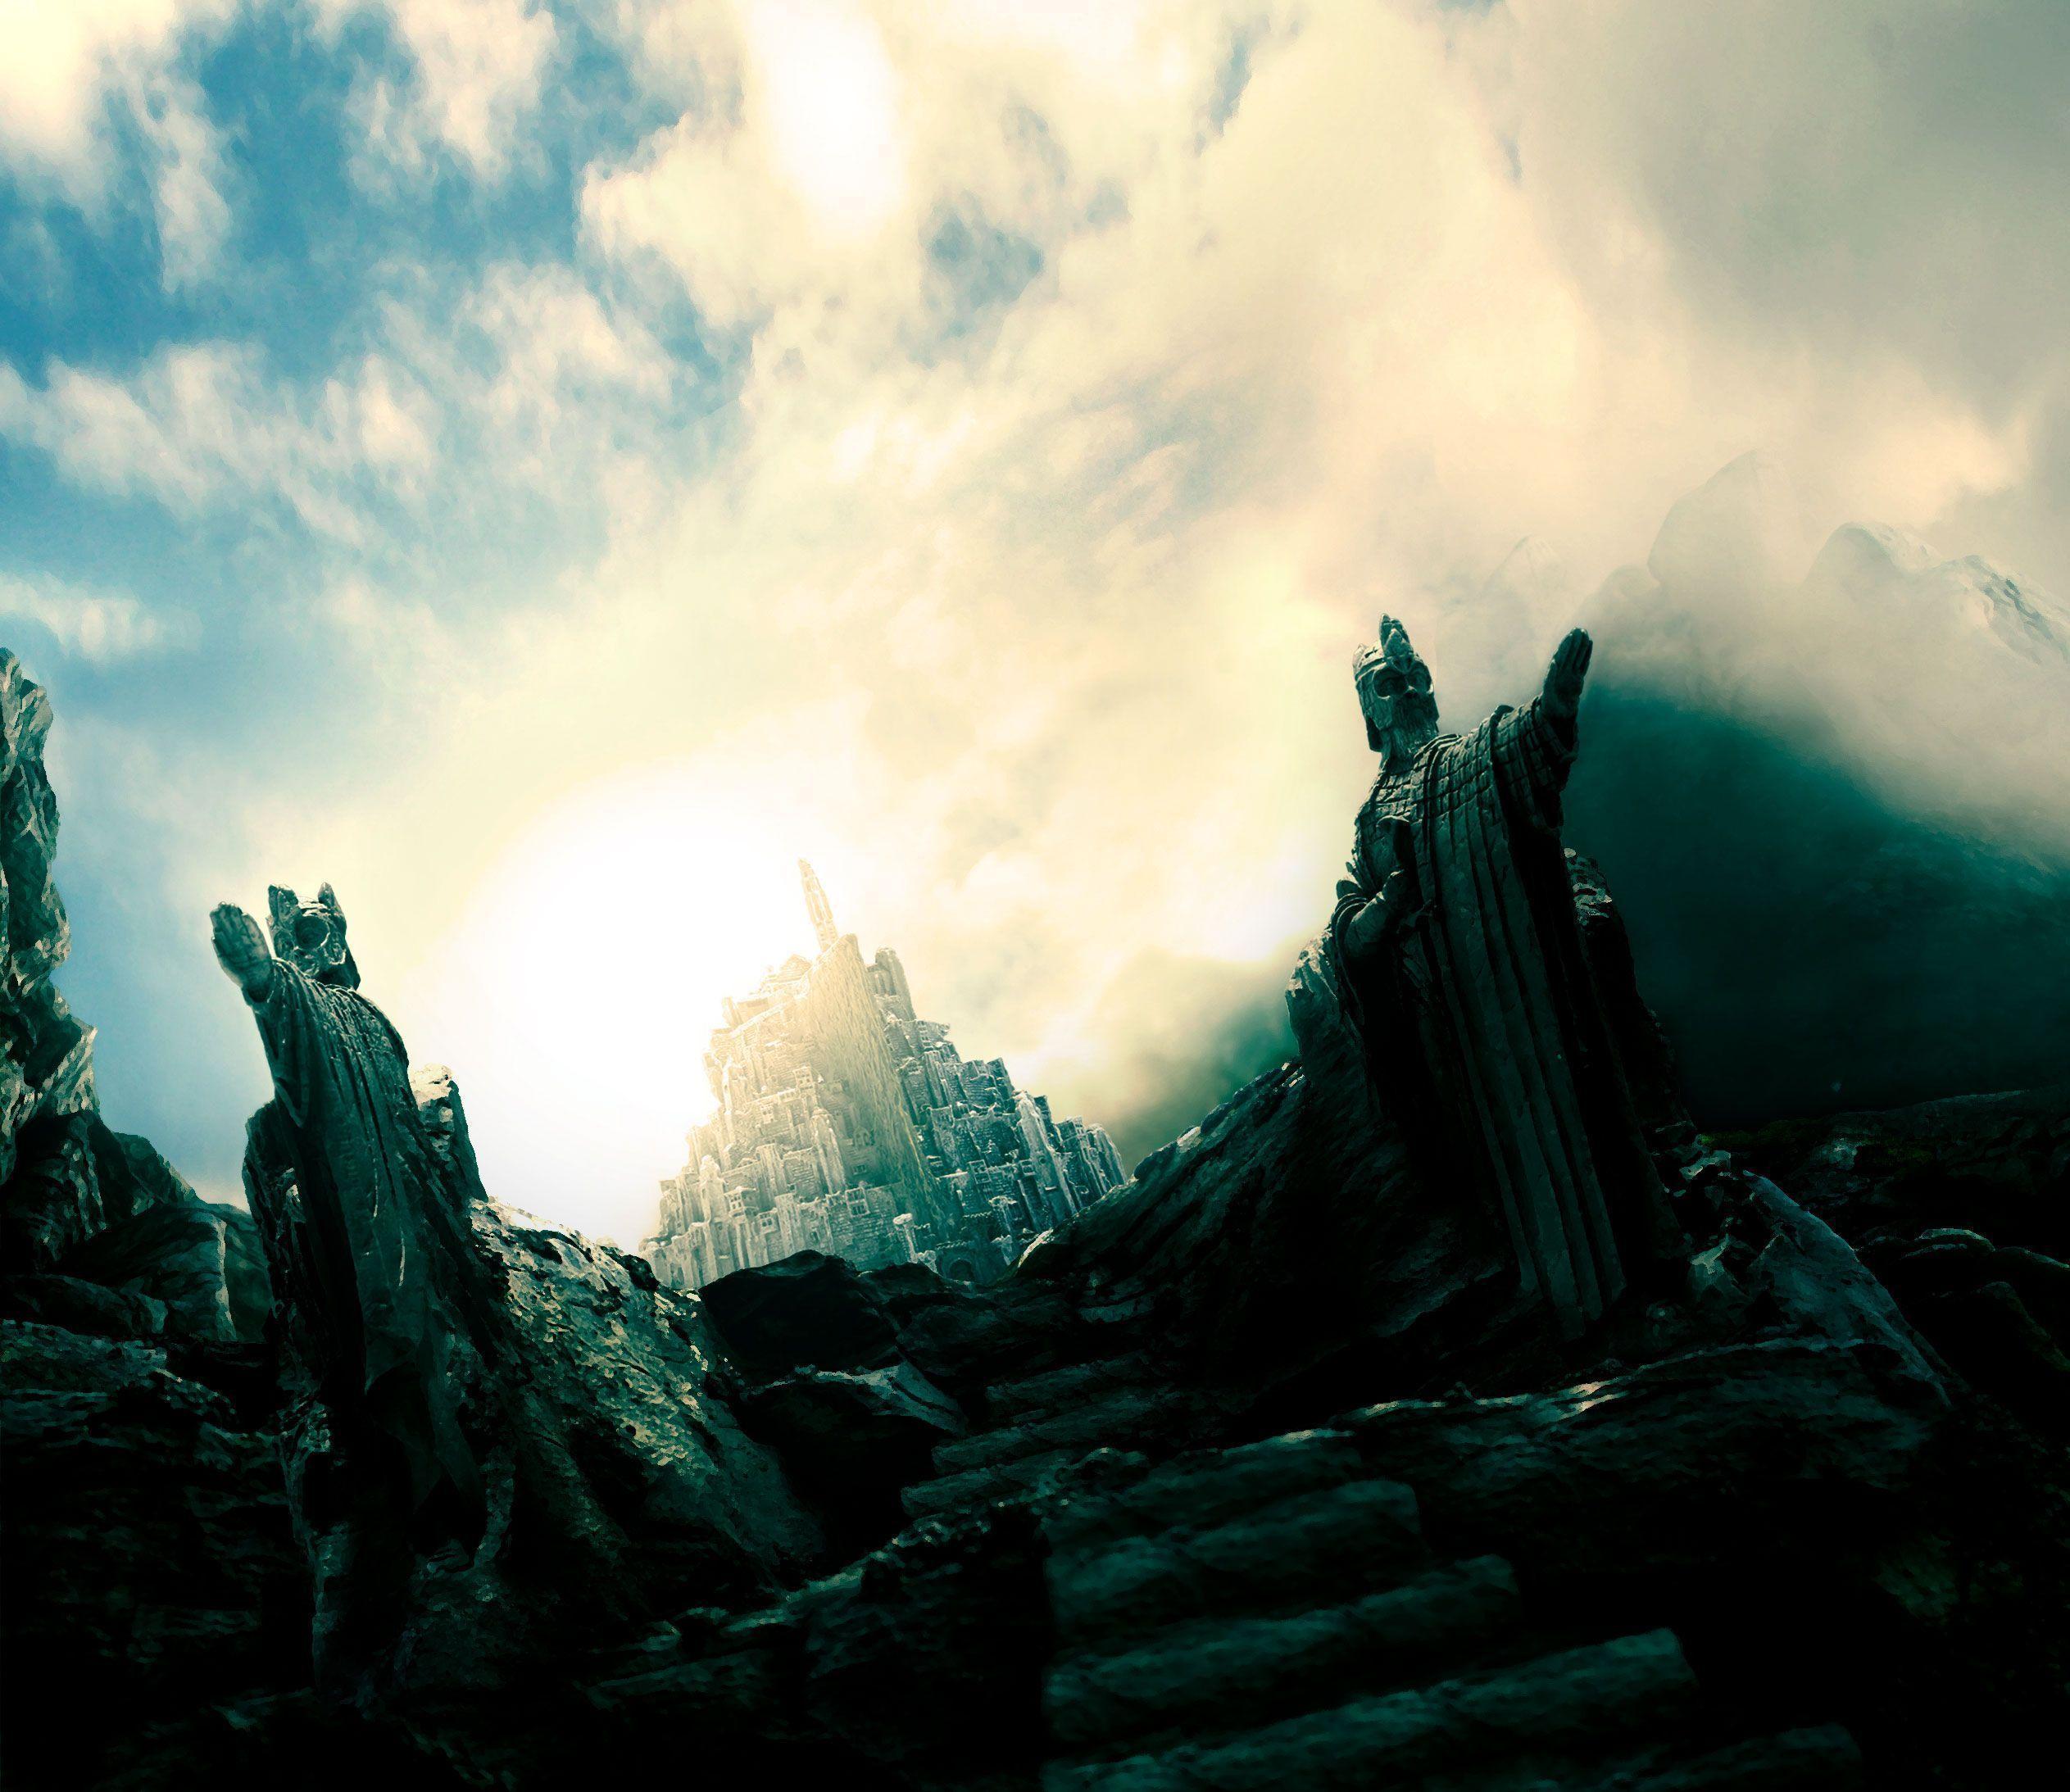 Fondos de pantalla de Minas Tirith. Wallpaper de Minas Tirith